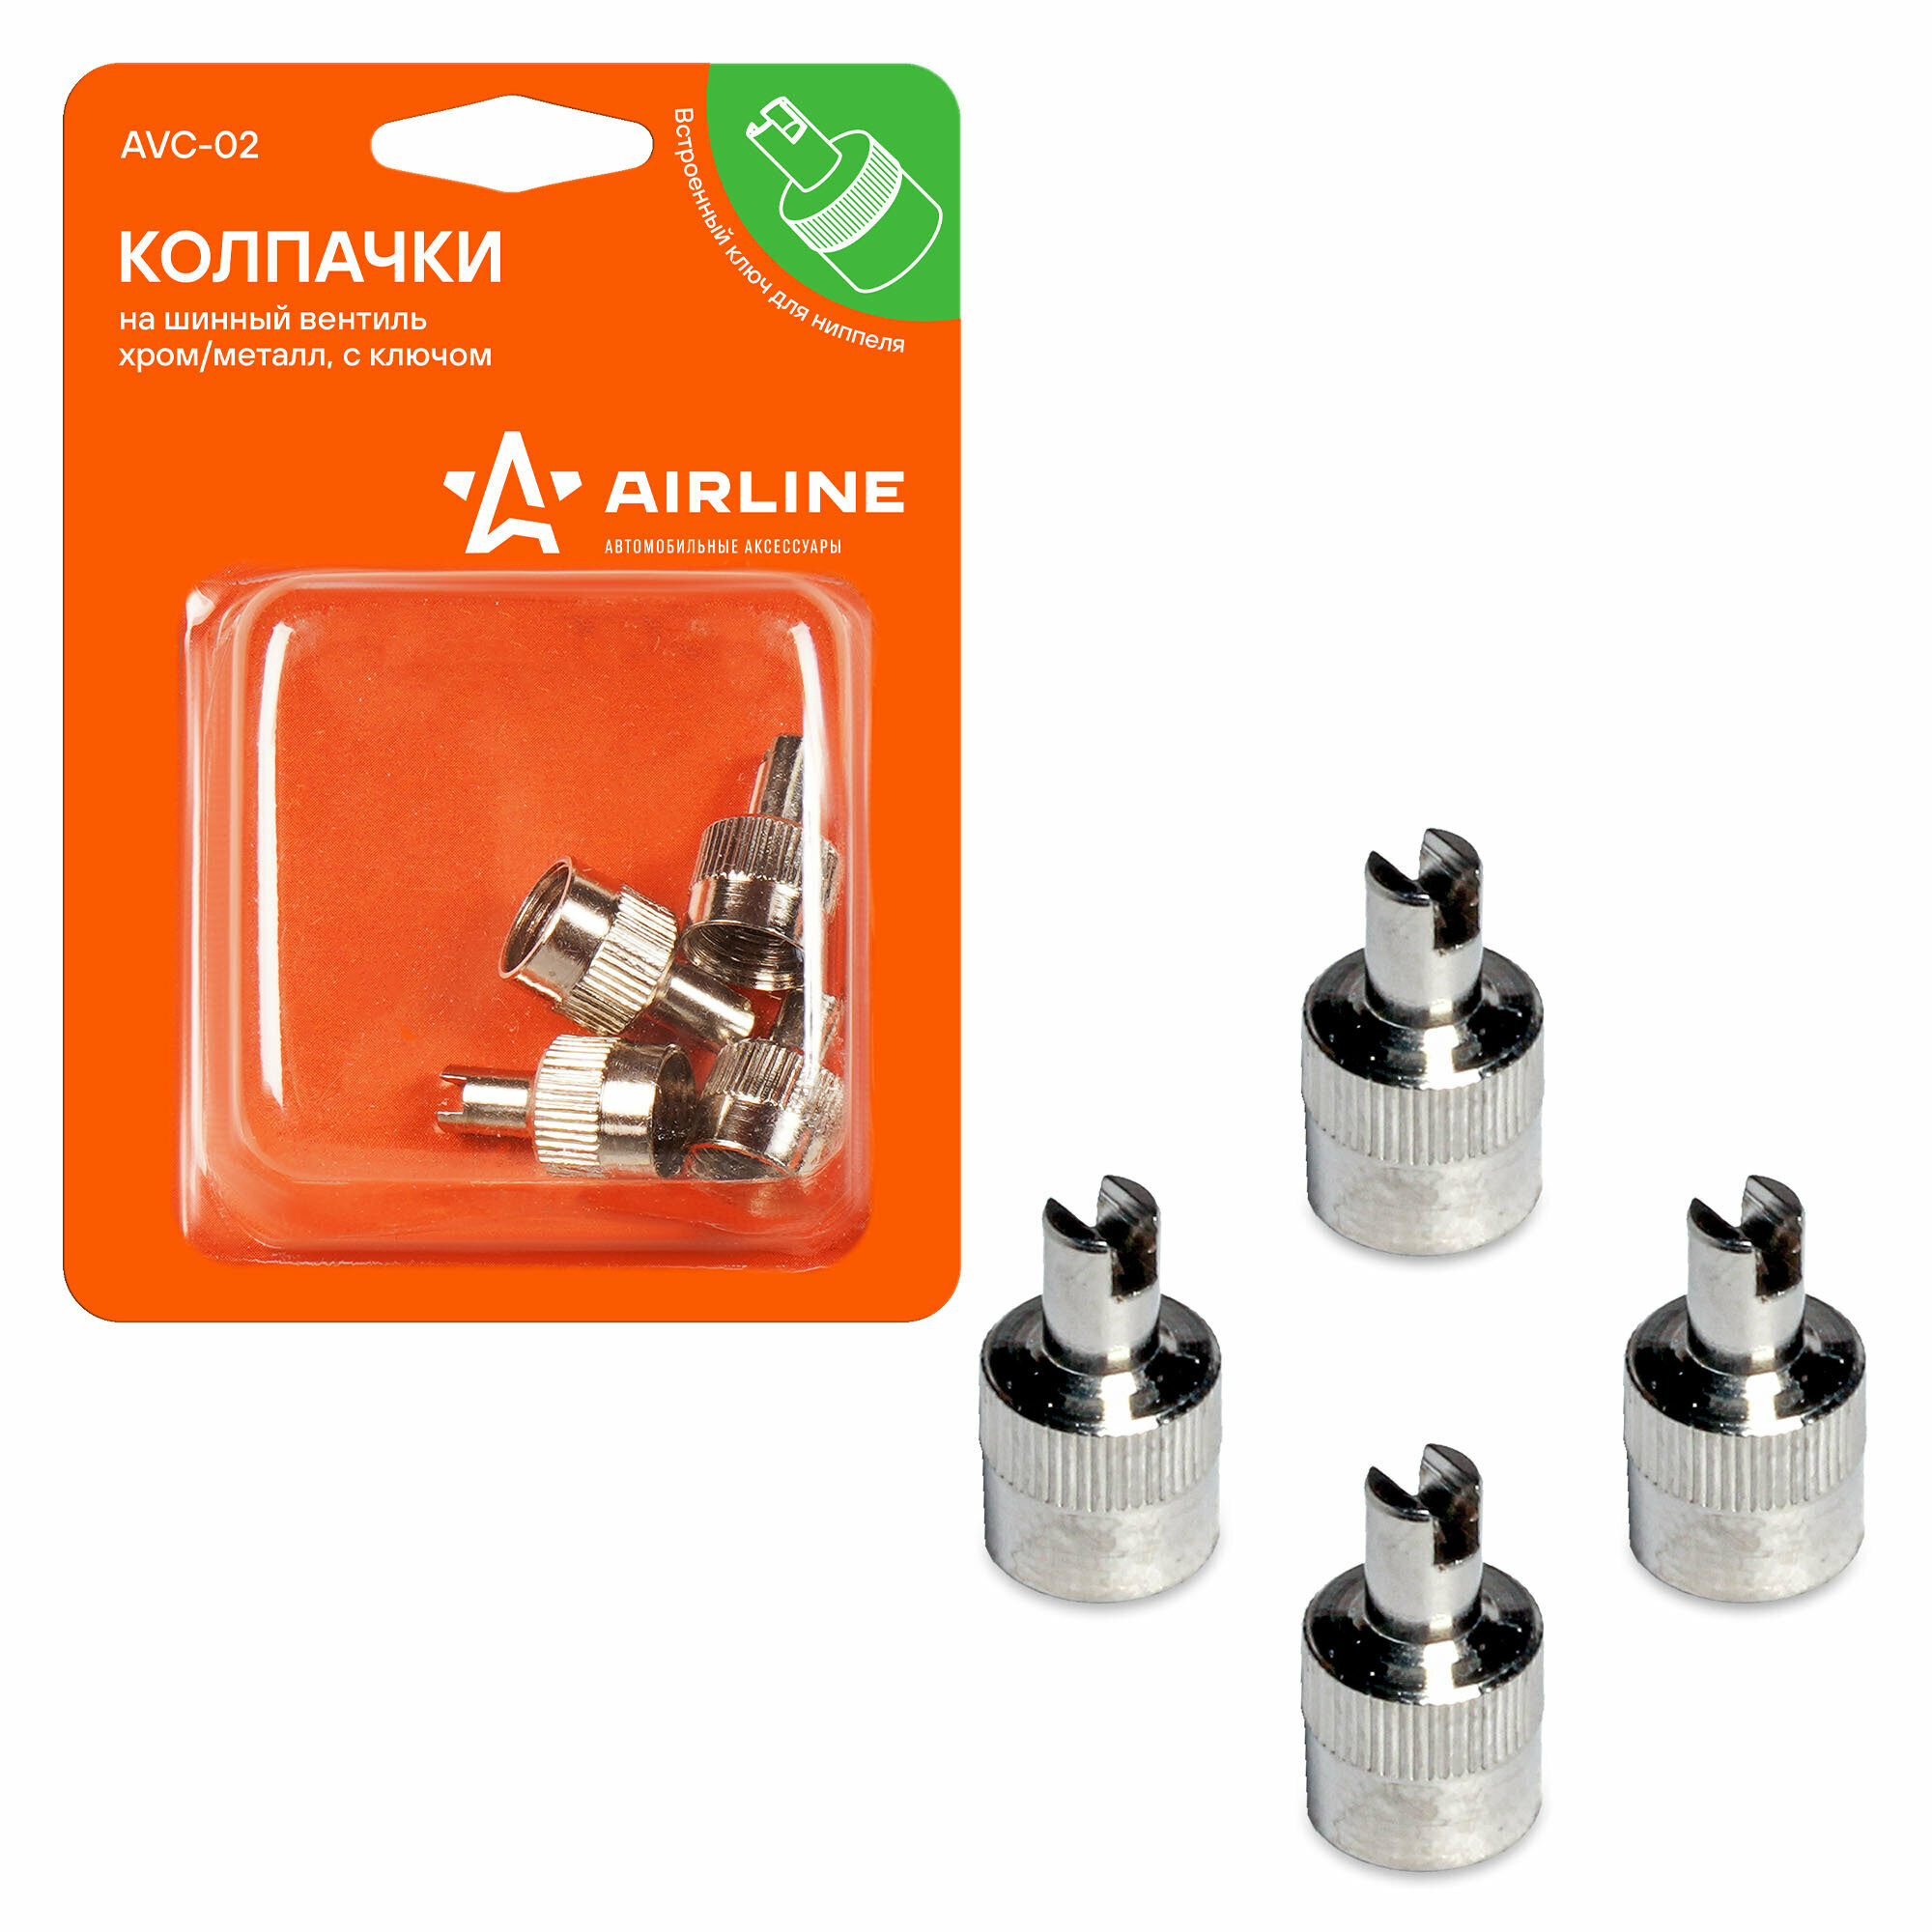 Колпачки на шинный вентиль с ключом, хром, металл, 4 шт. (AVC-02) AIRLINE